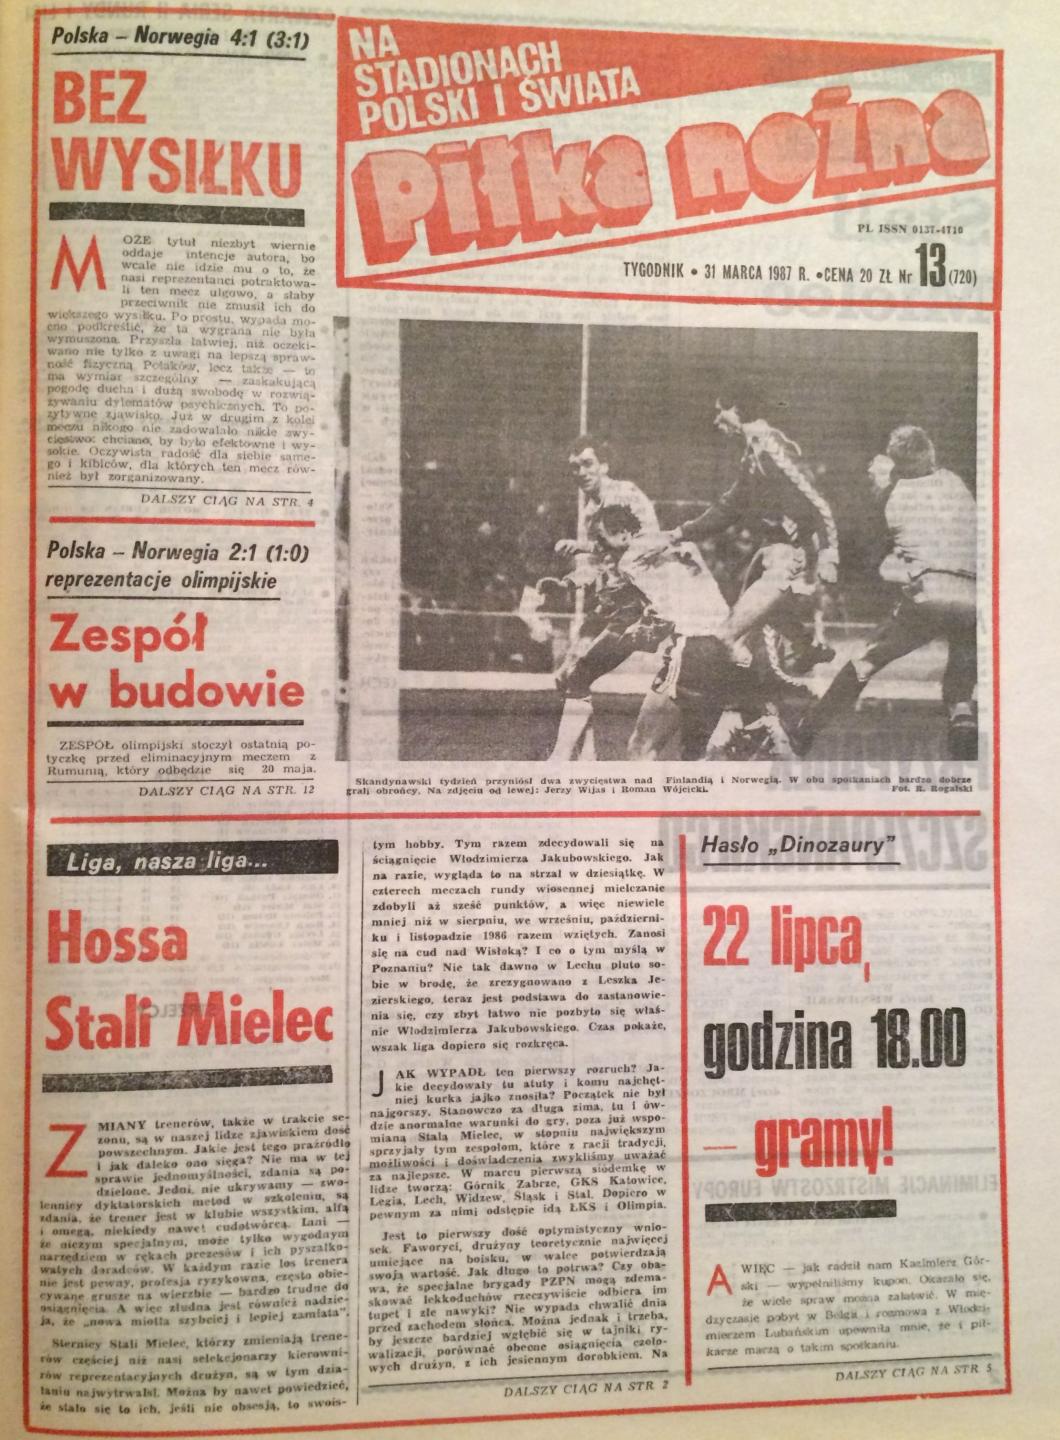 Okładka Piłki Nożnej po meczu Polska - Norwegia 4:1 (24.03.1987)